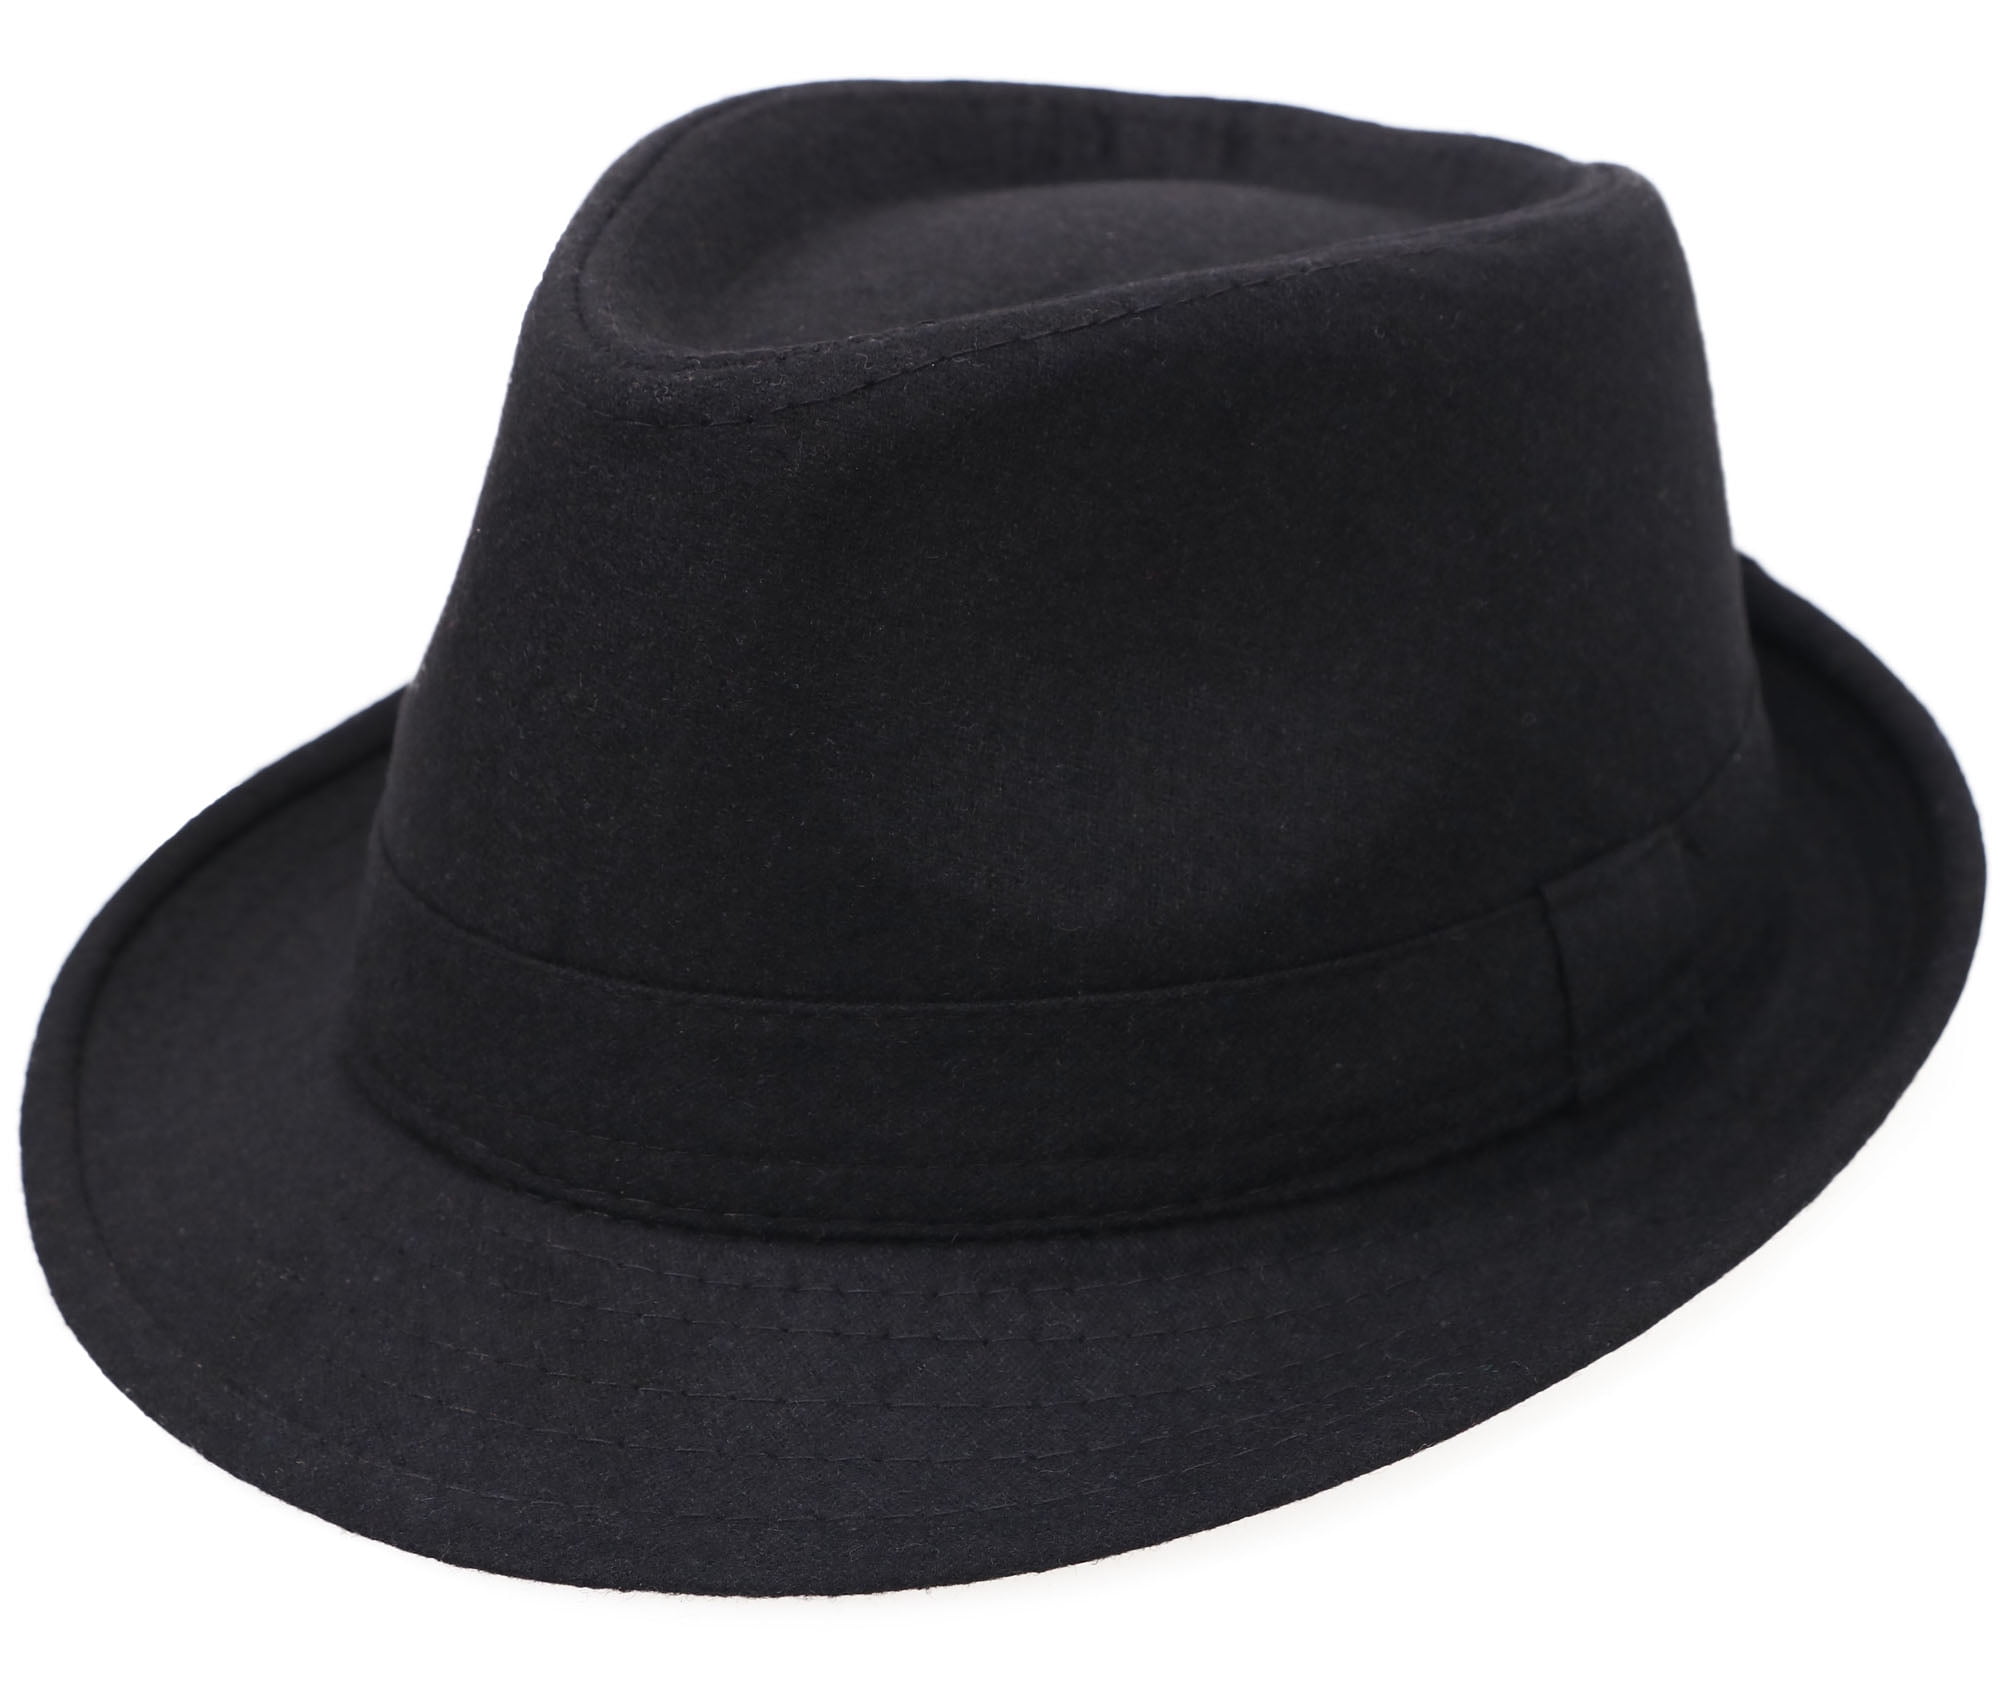 Фетровая шляпа купить москва. Fedora шляпа мужская. Шляпа мужская Fedora Black. Шляпа трилби черная. Фетровая шляпа Федора.